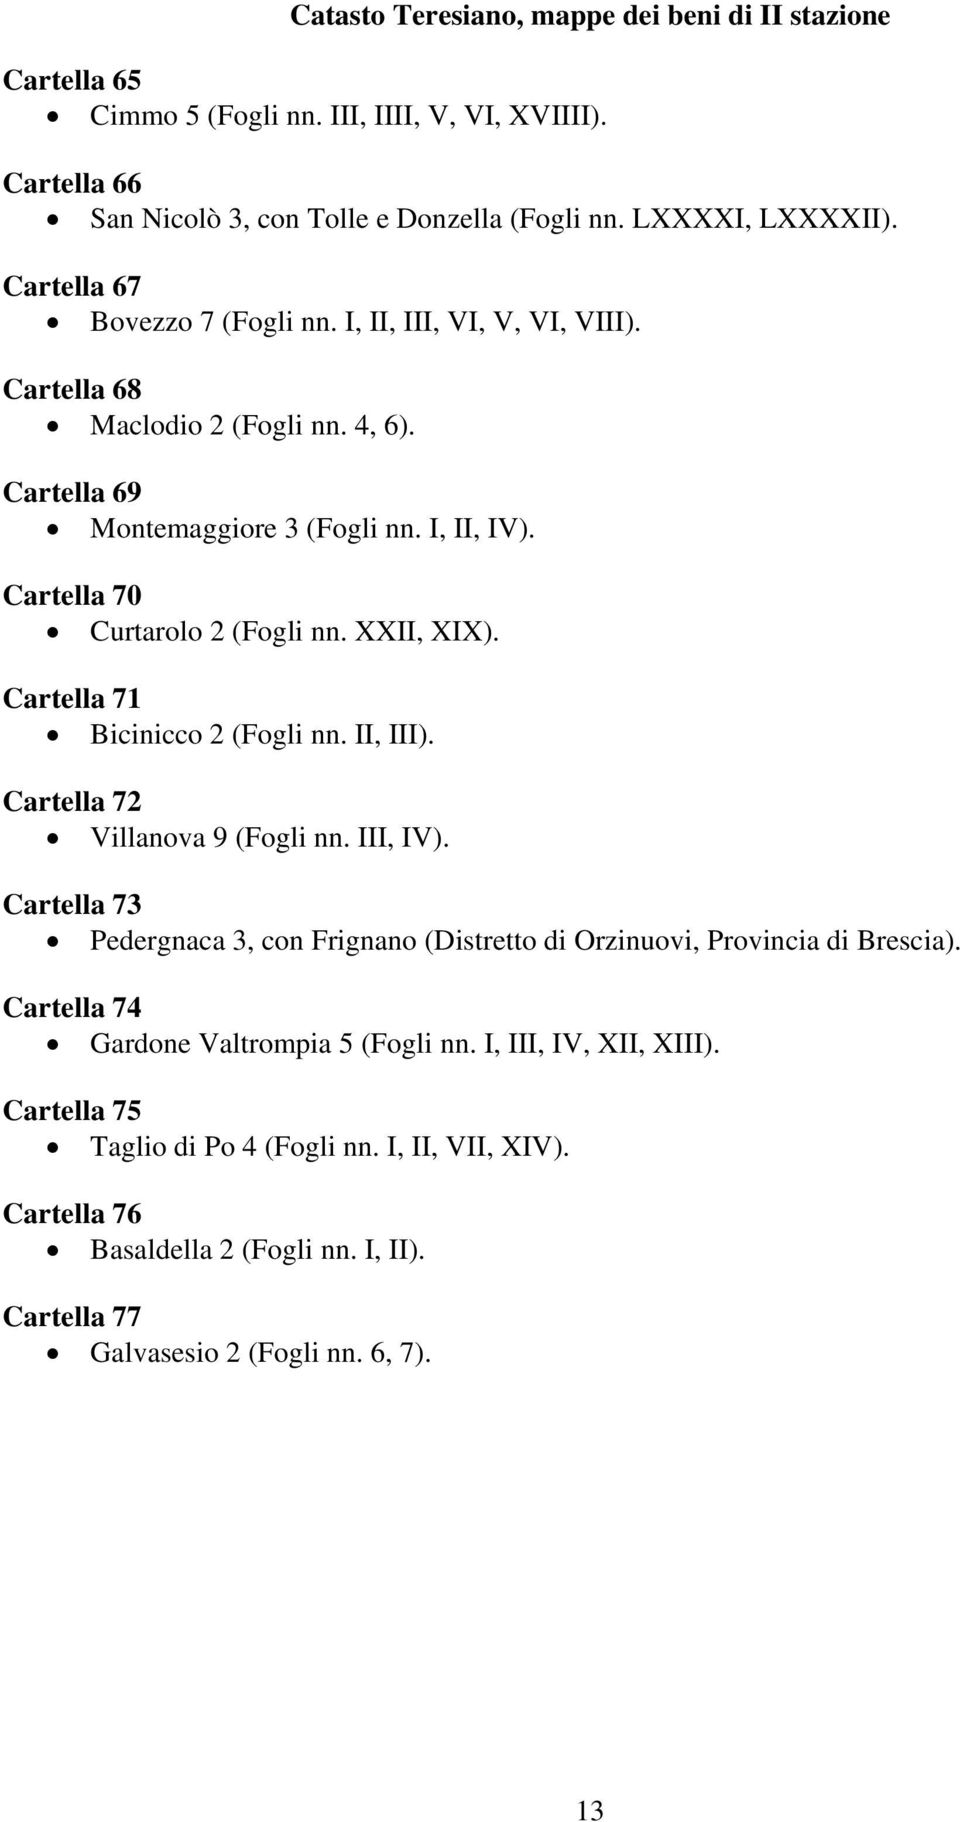 XXII, XIX). Cartella 71 Bicinicco 2 (Fogli nn. II, III). Cartella 72 Villanova 9 (Fogli nn. III, IV). Cartella 73 Pedergnaca 3, con Frignano (Distretto di Orzinuovi, Provincia di Brescia).